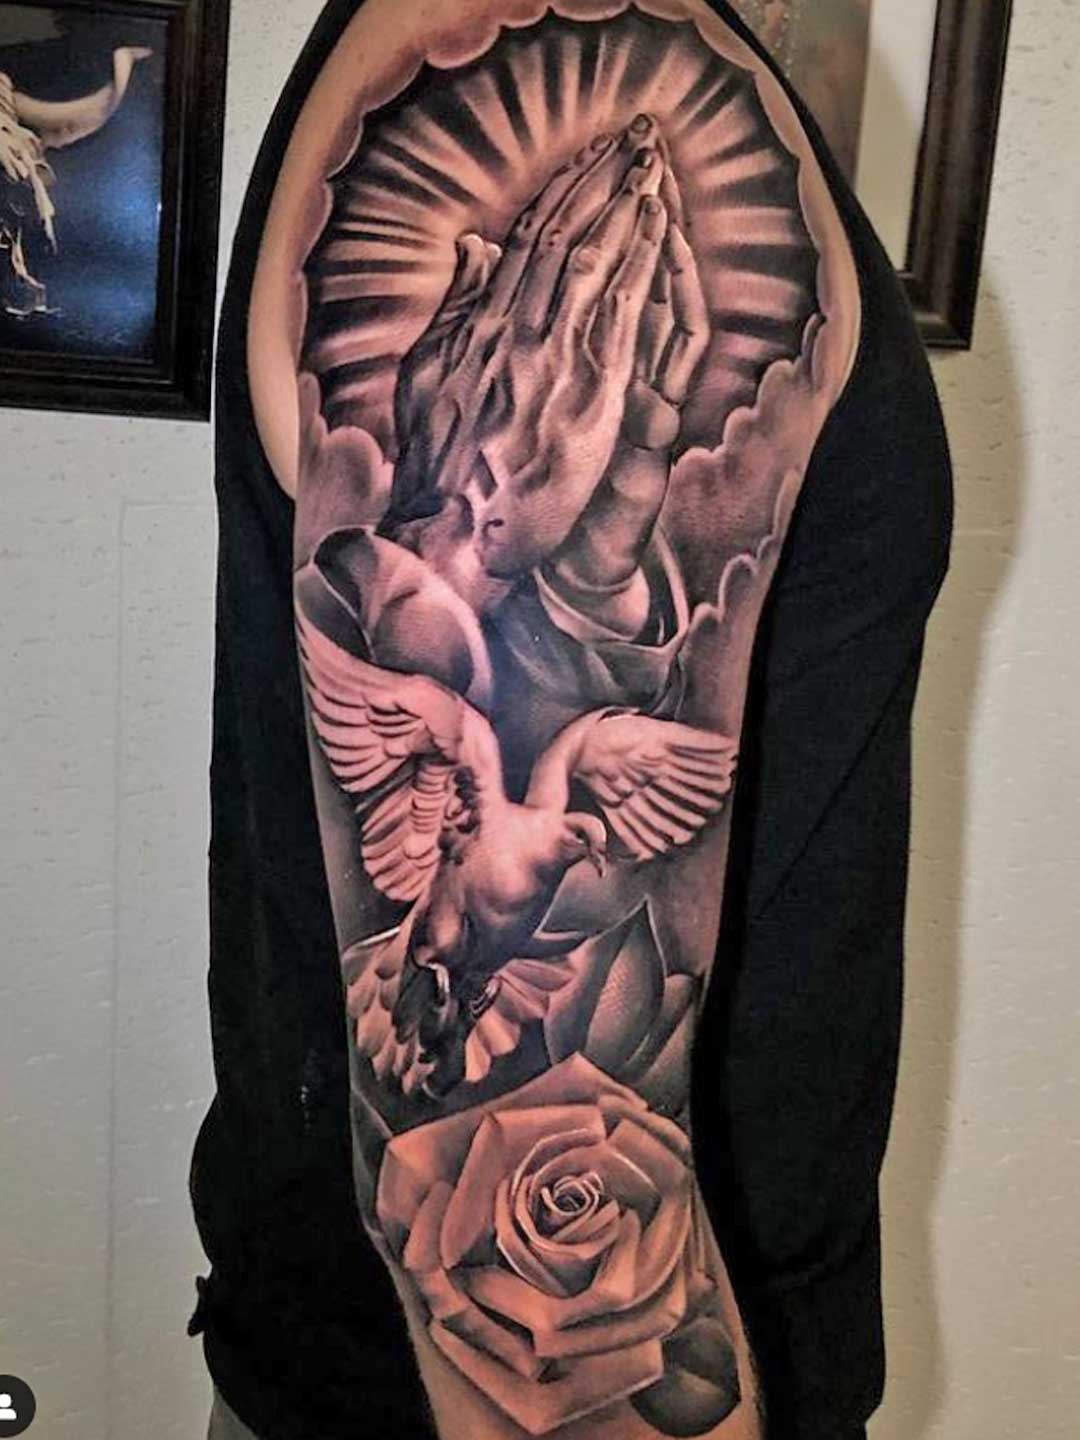 Maui tattoo artist Dre3